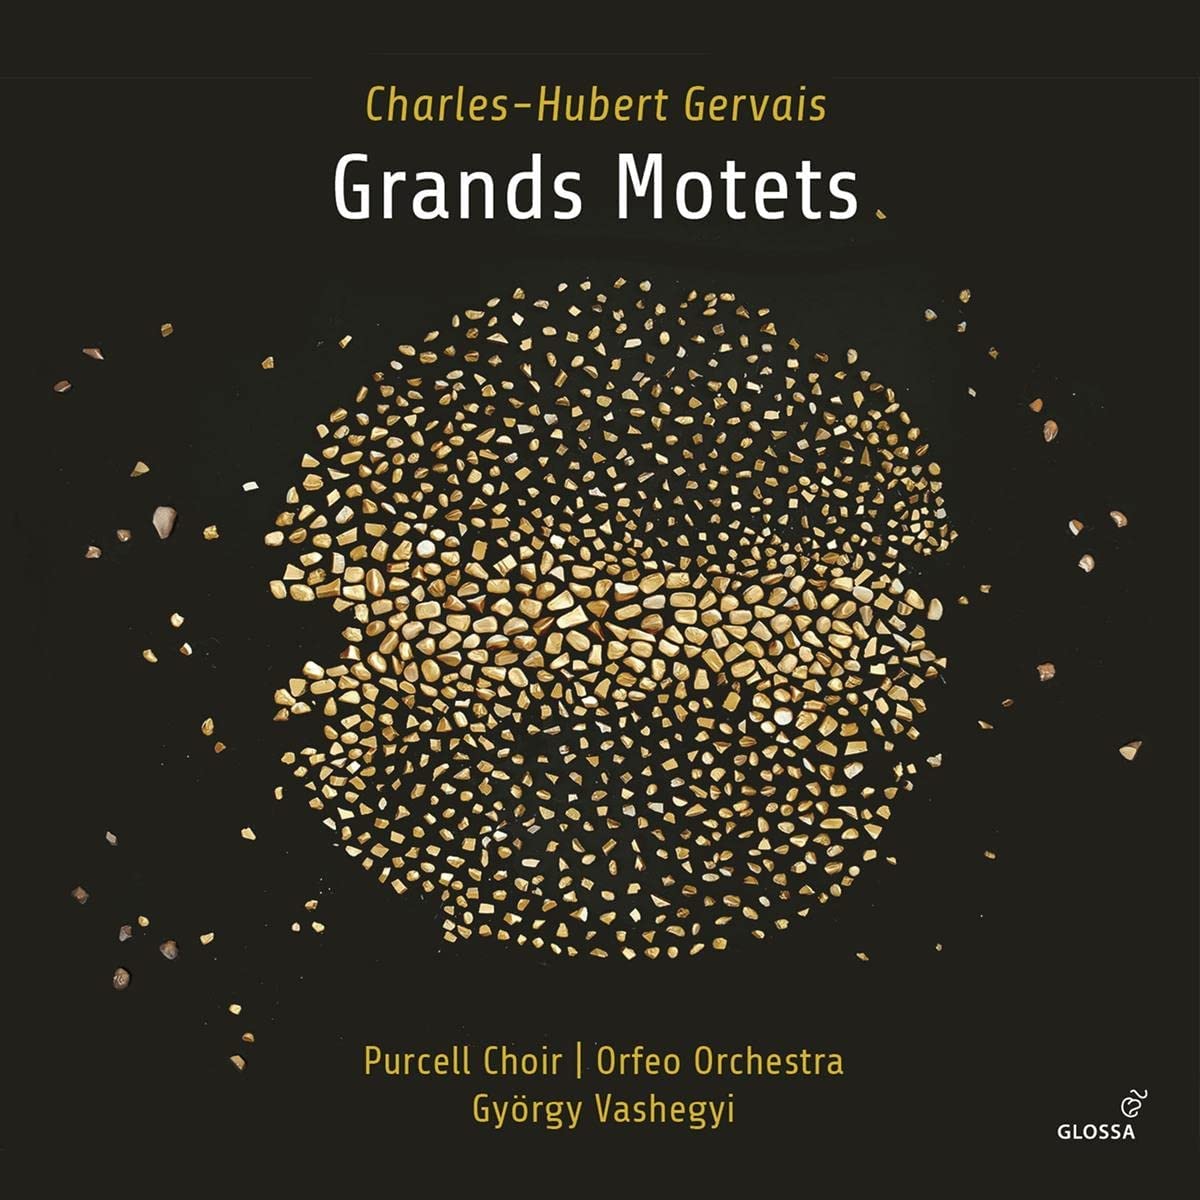 CD cover Gervais motets Vashegyi